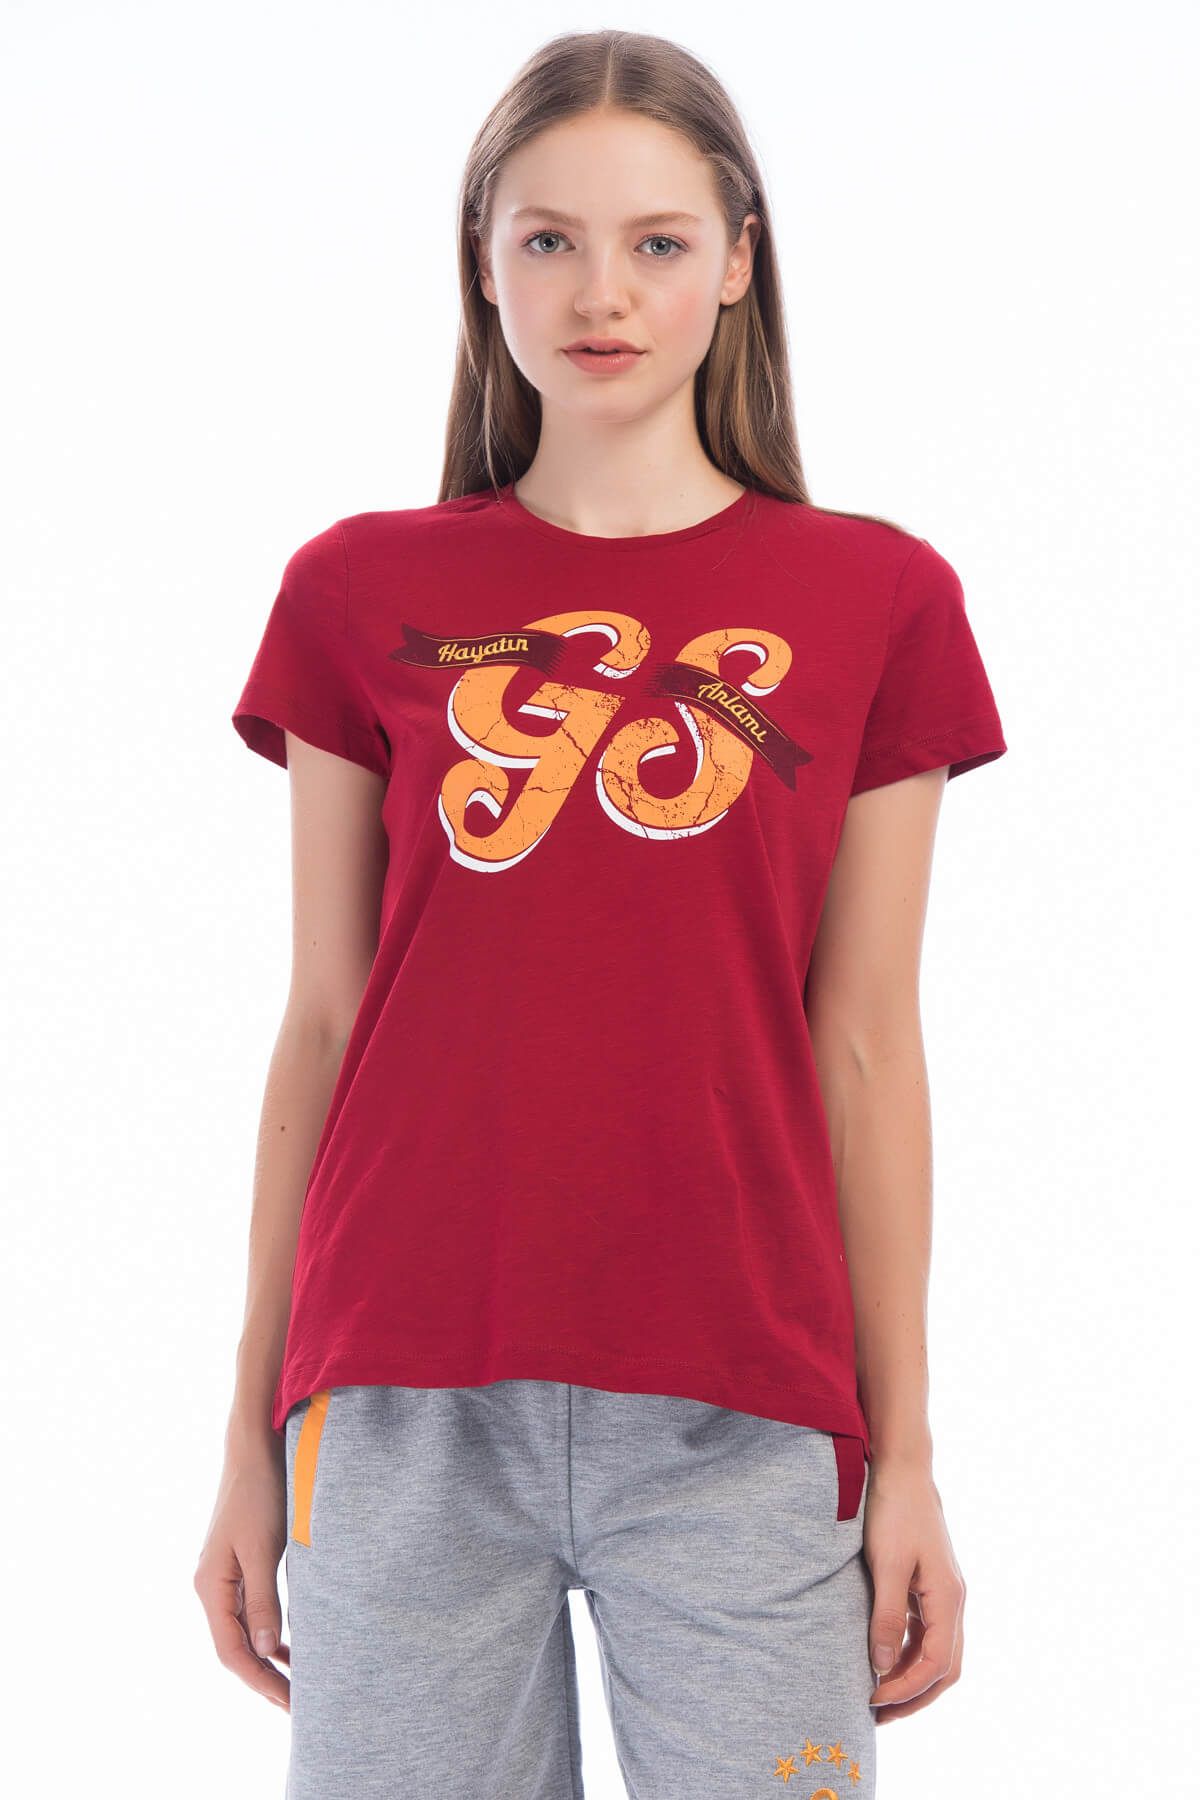 Galatasaray Galatasaray Kadın Kırmızı T-Shirt - Y023-K80149